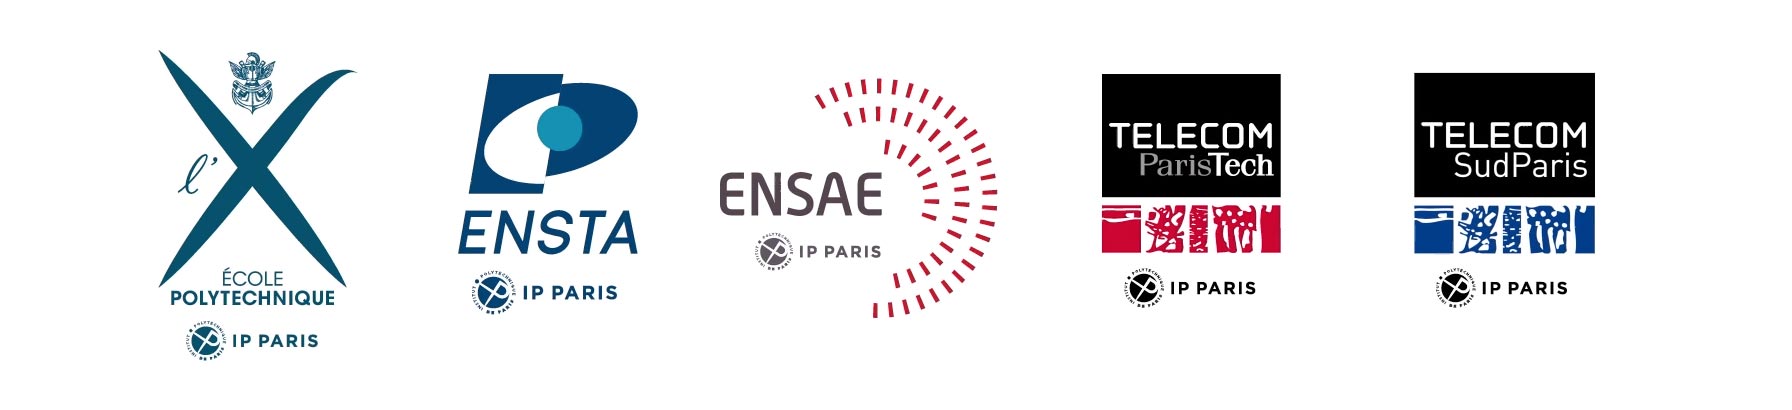 Les 5 écoles IP Paris : Polytechnique, ENSTA, ENSAE, Télécom ParisTech, Télécom SudParis